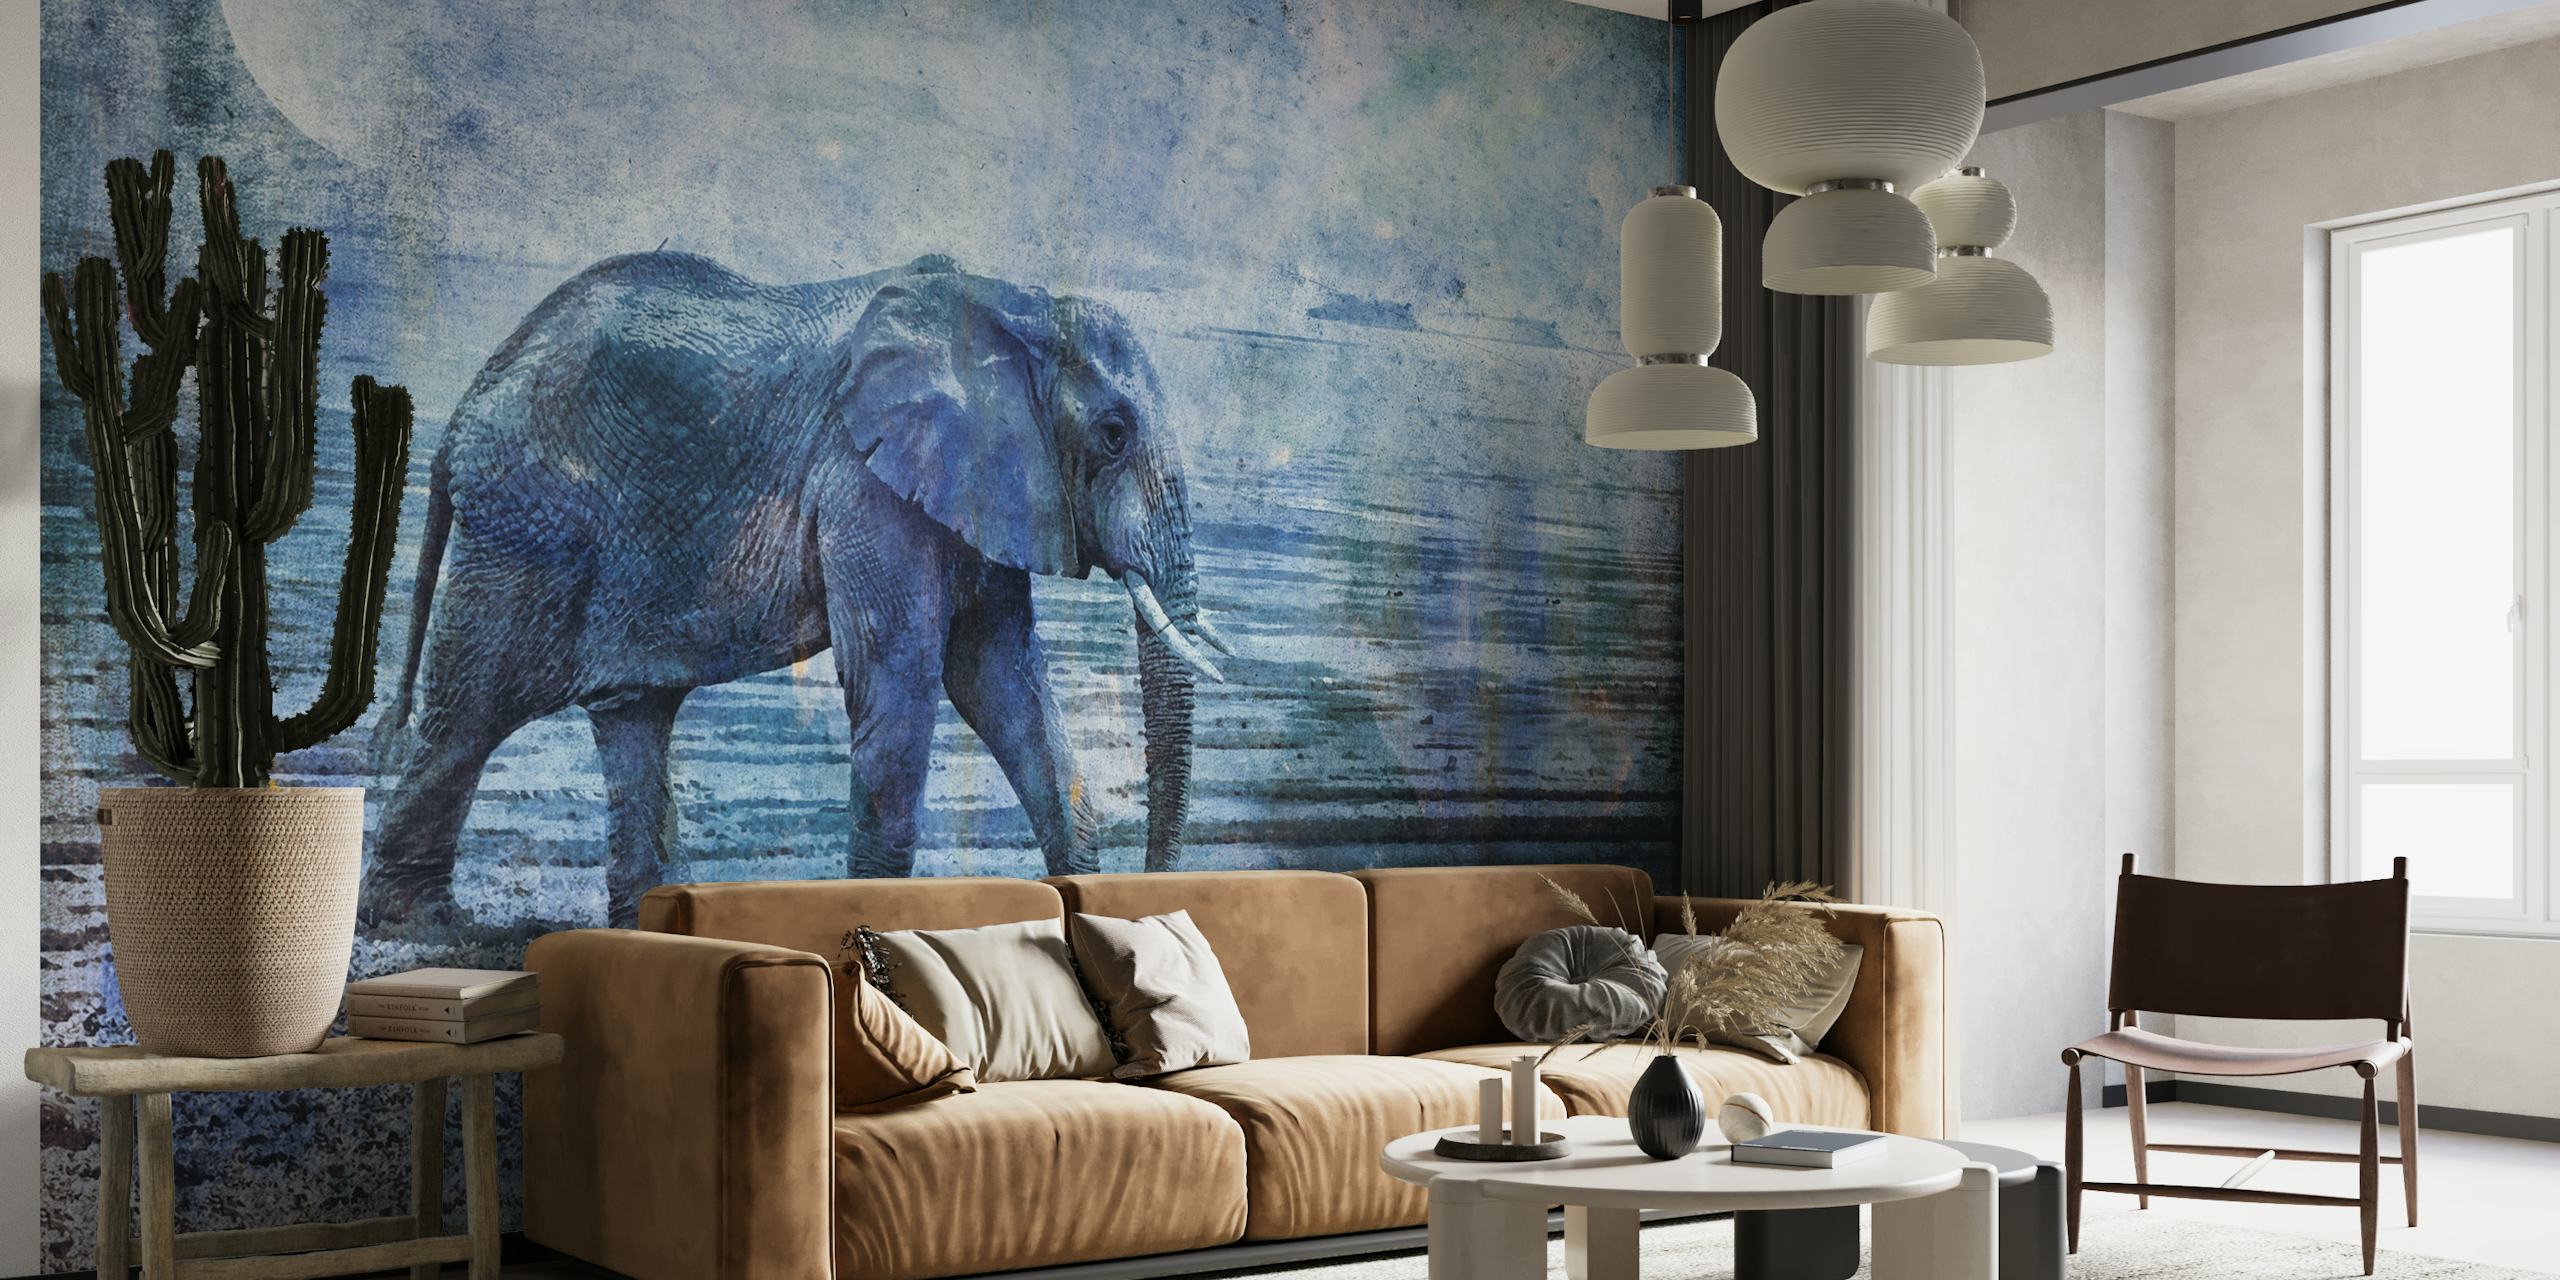 Slon kráčí za měsíčního svitu v nástěnné malbě s texturou krajiny